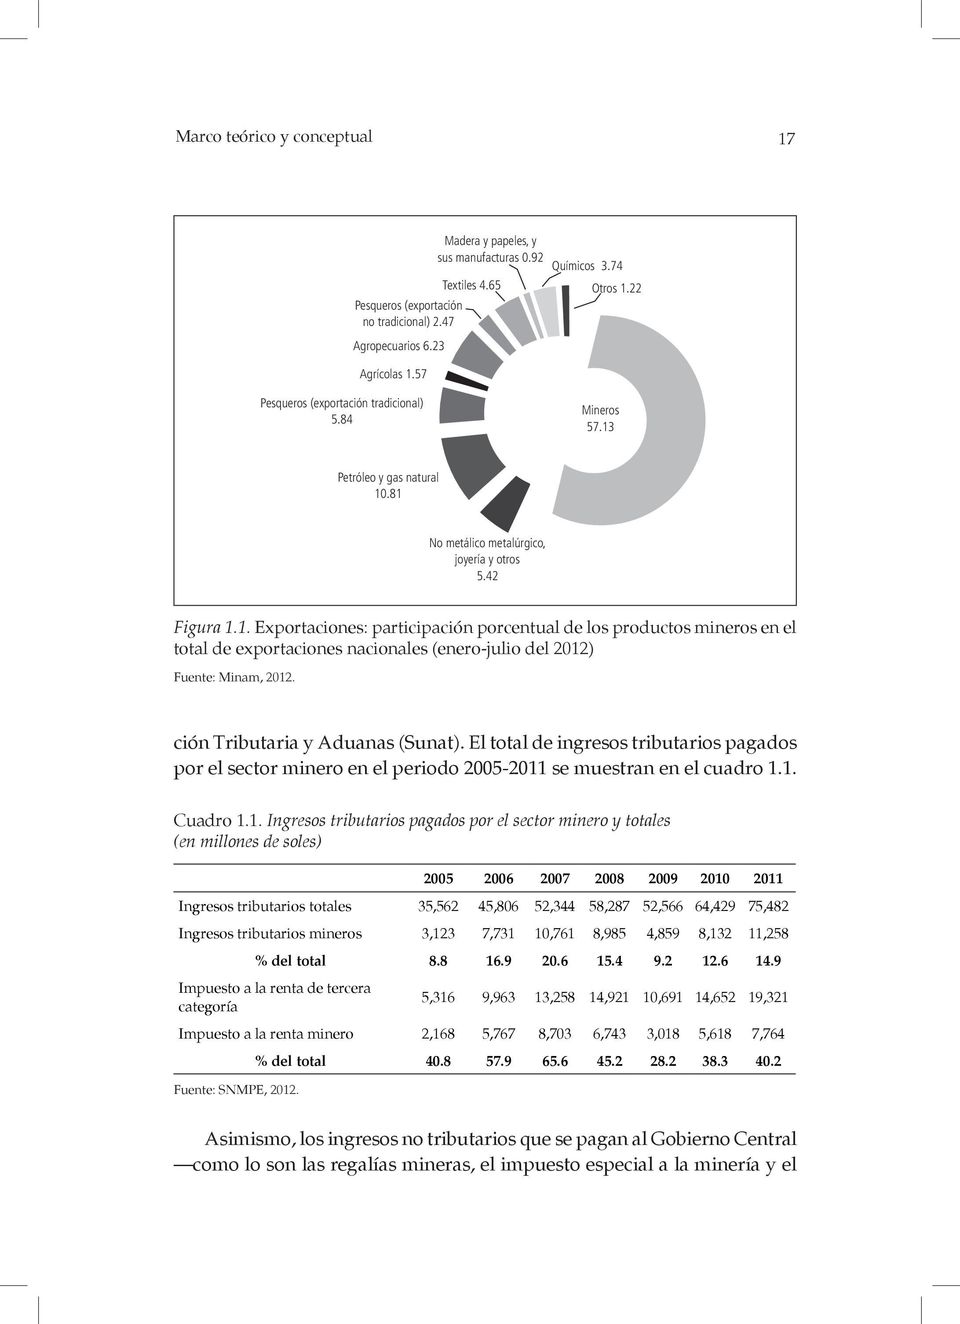 Petróleo y gas natural 10.81 No metálico metalúrgico, joyería y otros 5.42 Figura 1.1. Exportaciones: participación porcentual de los productos mineros en el total de exportaciones nacionales (enero-julio del 2012) Fuente: Minam, 2012.